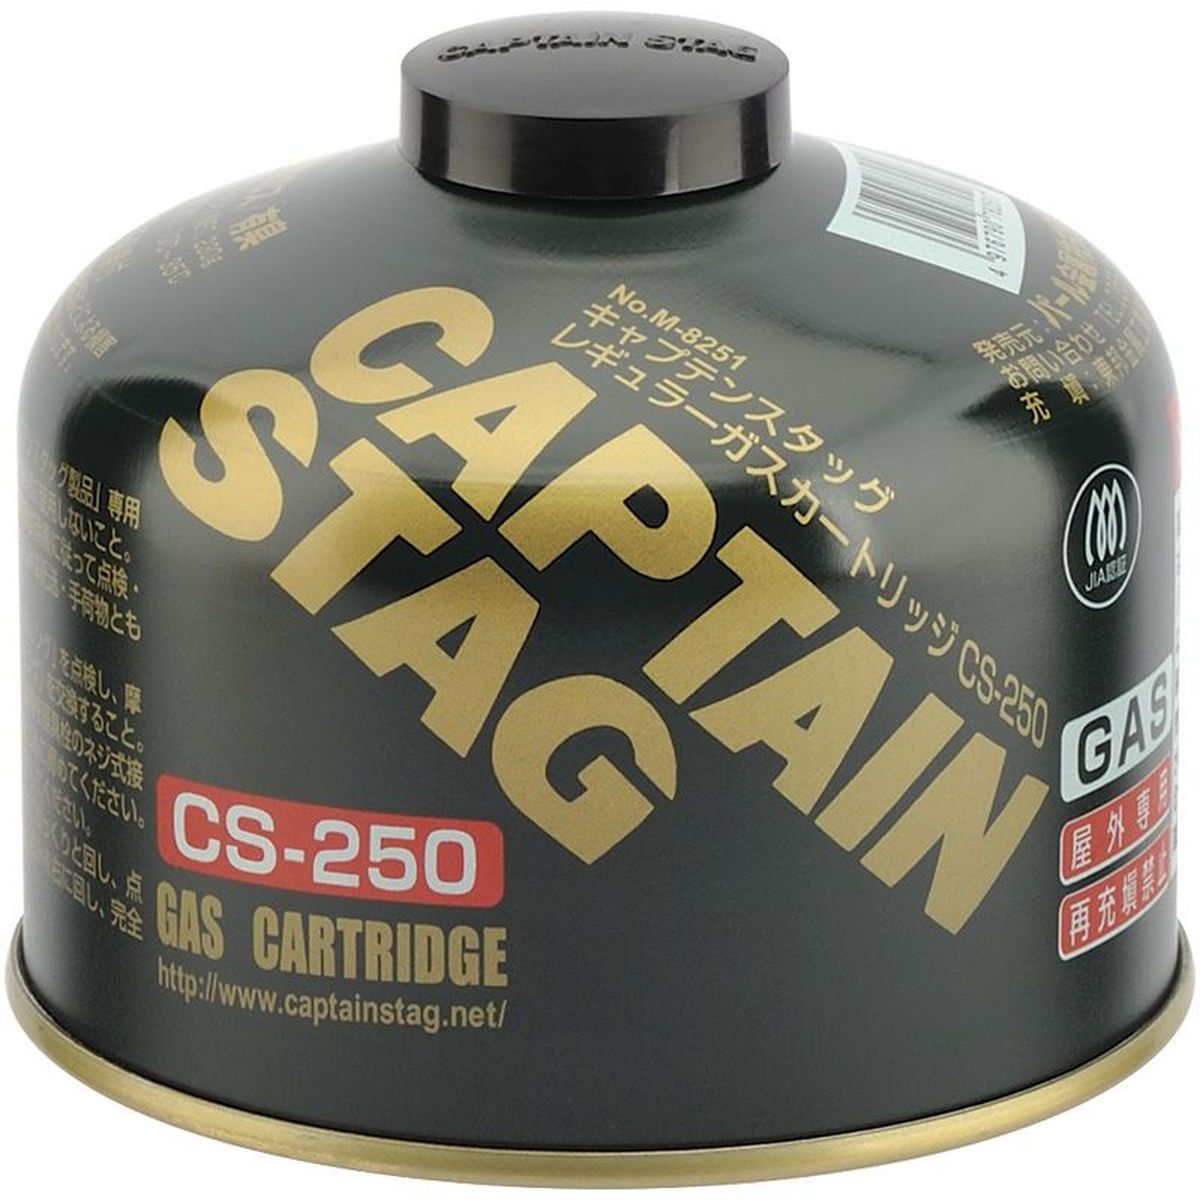 キャプテンスタッグ(CAPTAIN STAG) レギュラー ガスカートリッジ 230g